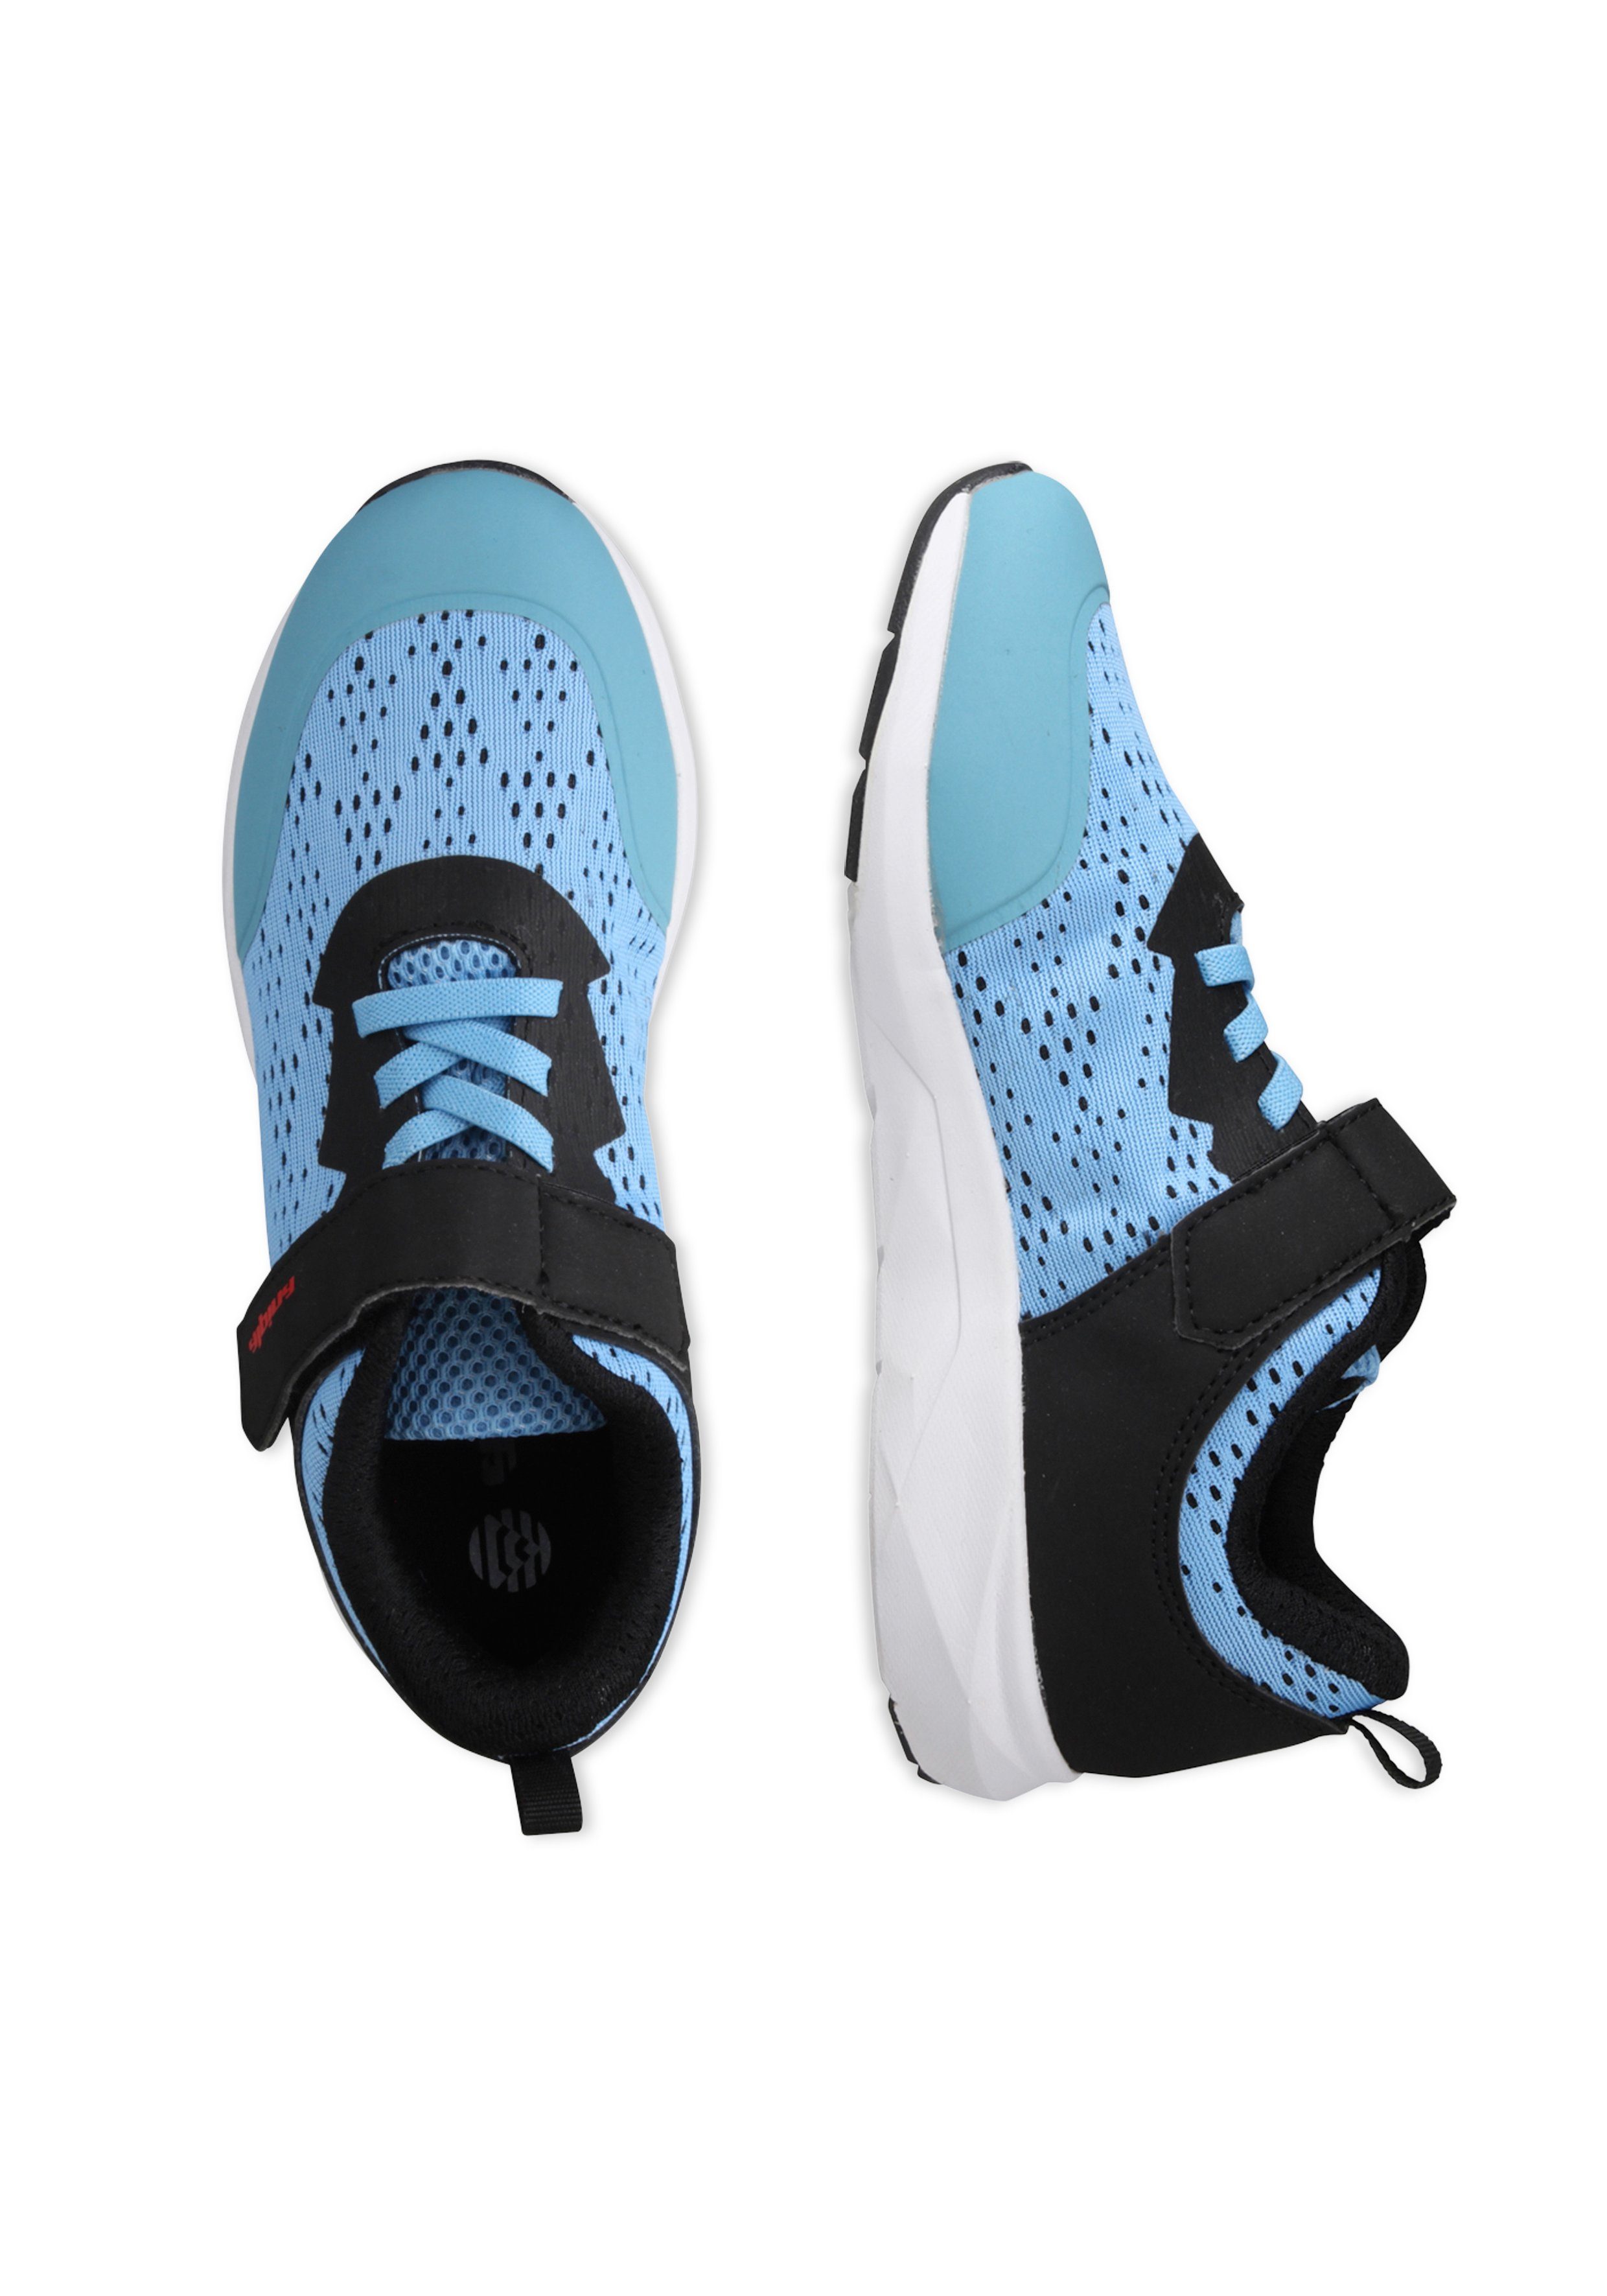 blau-schwarz Sports mit Alpina Ferse Fun Sneaker verstärkter